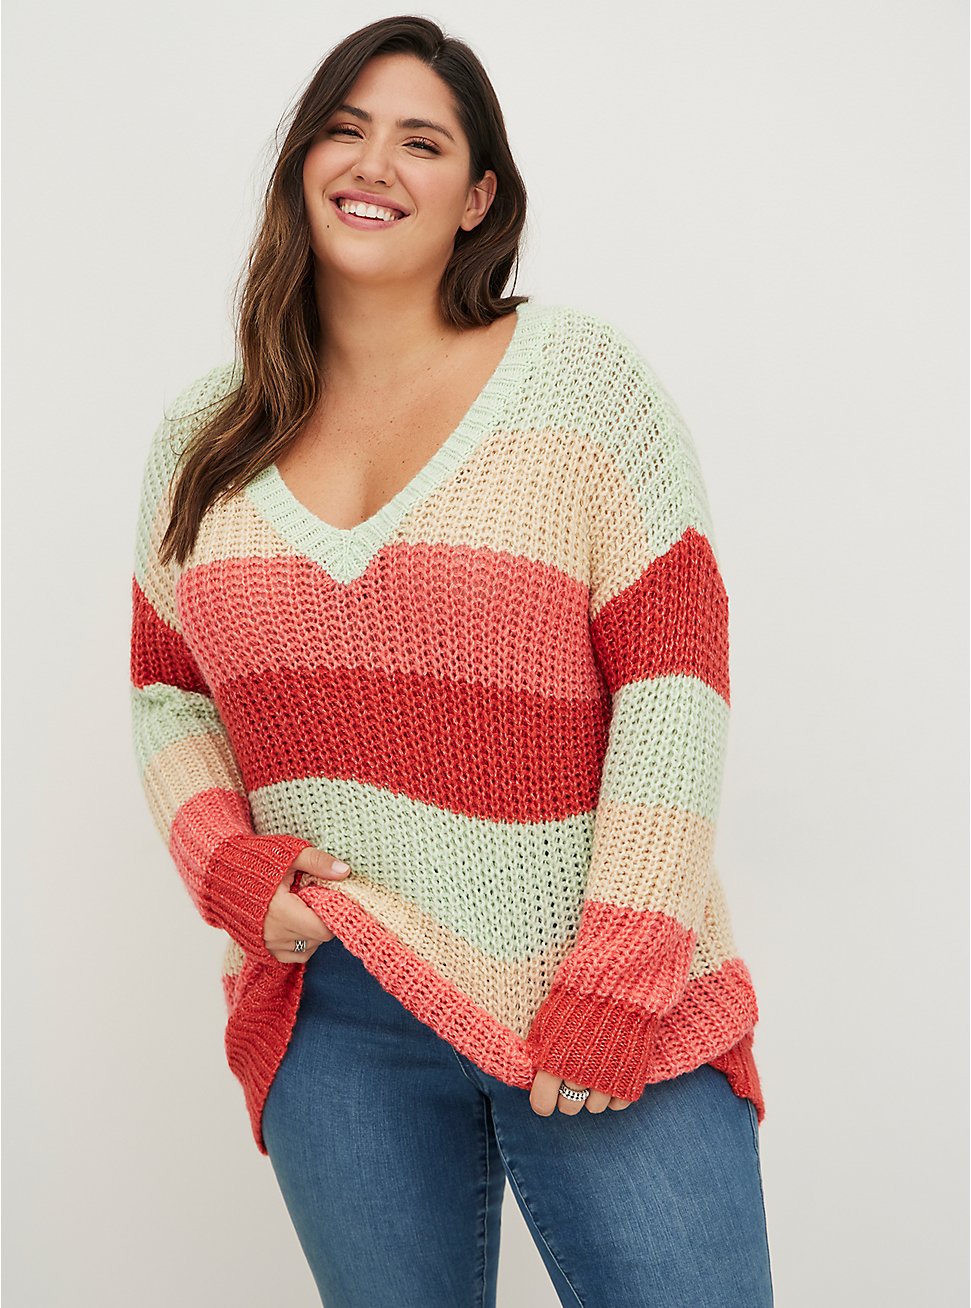 Plus Size Pullover Sweater - Multi Stripe, MULTI STRIPE, hi-res